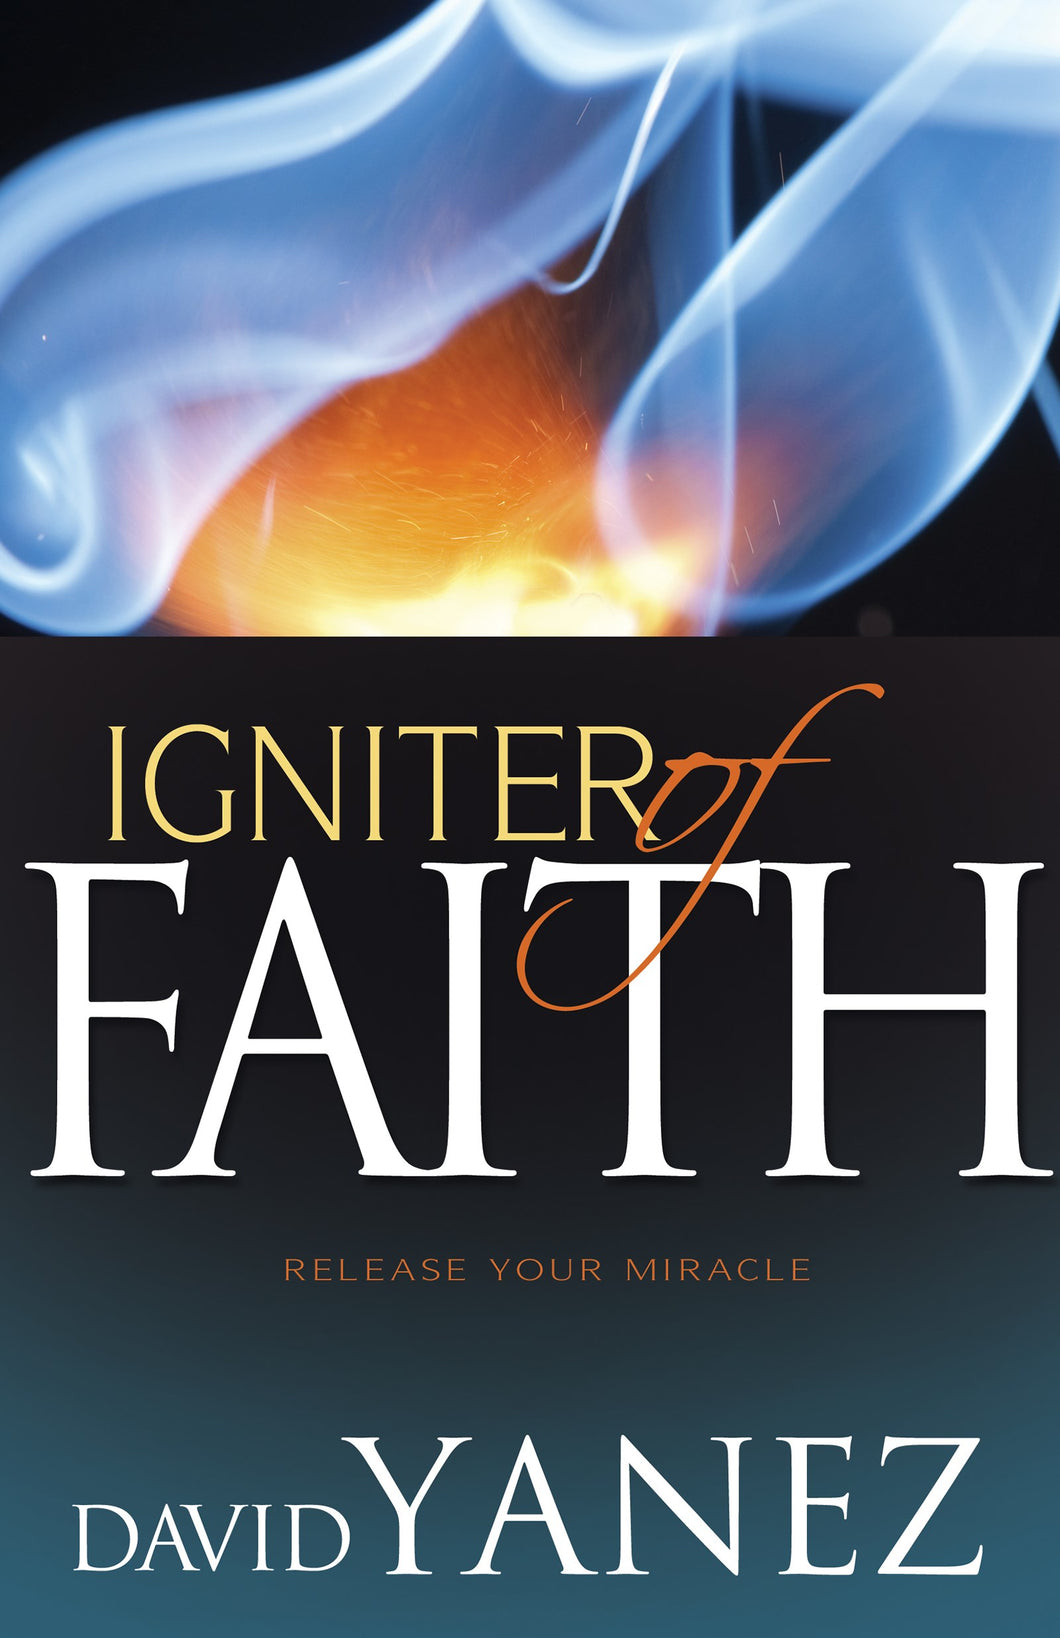 Igniter Of Faith